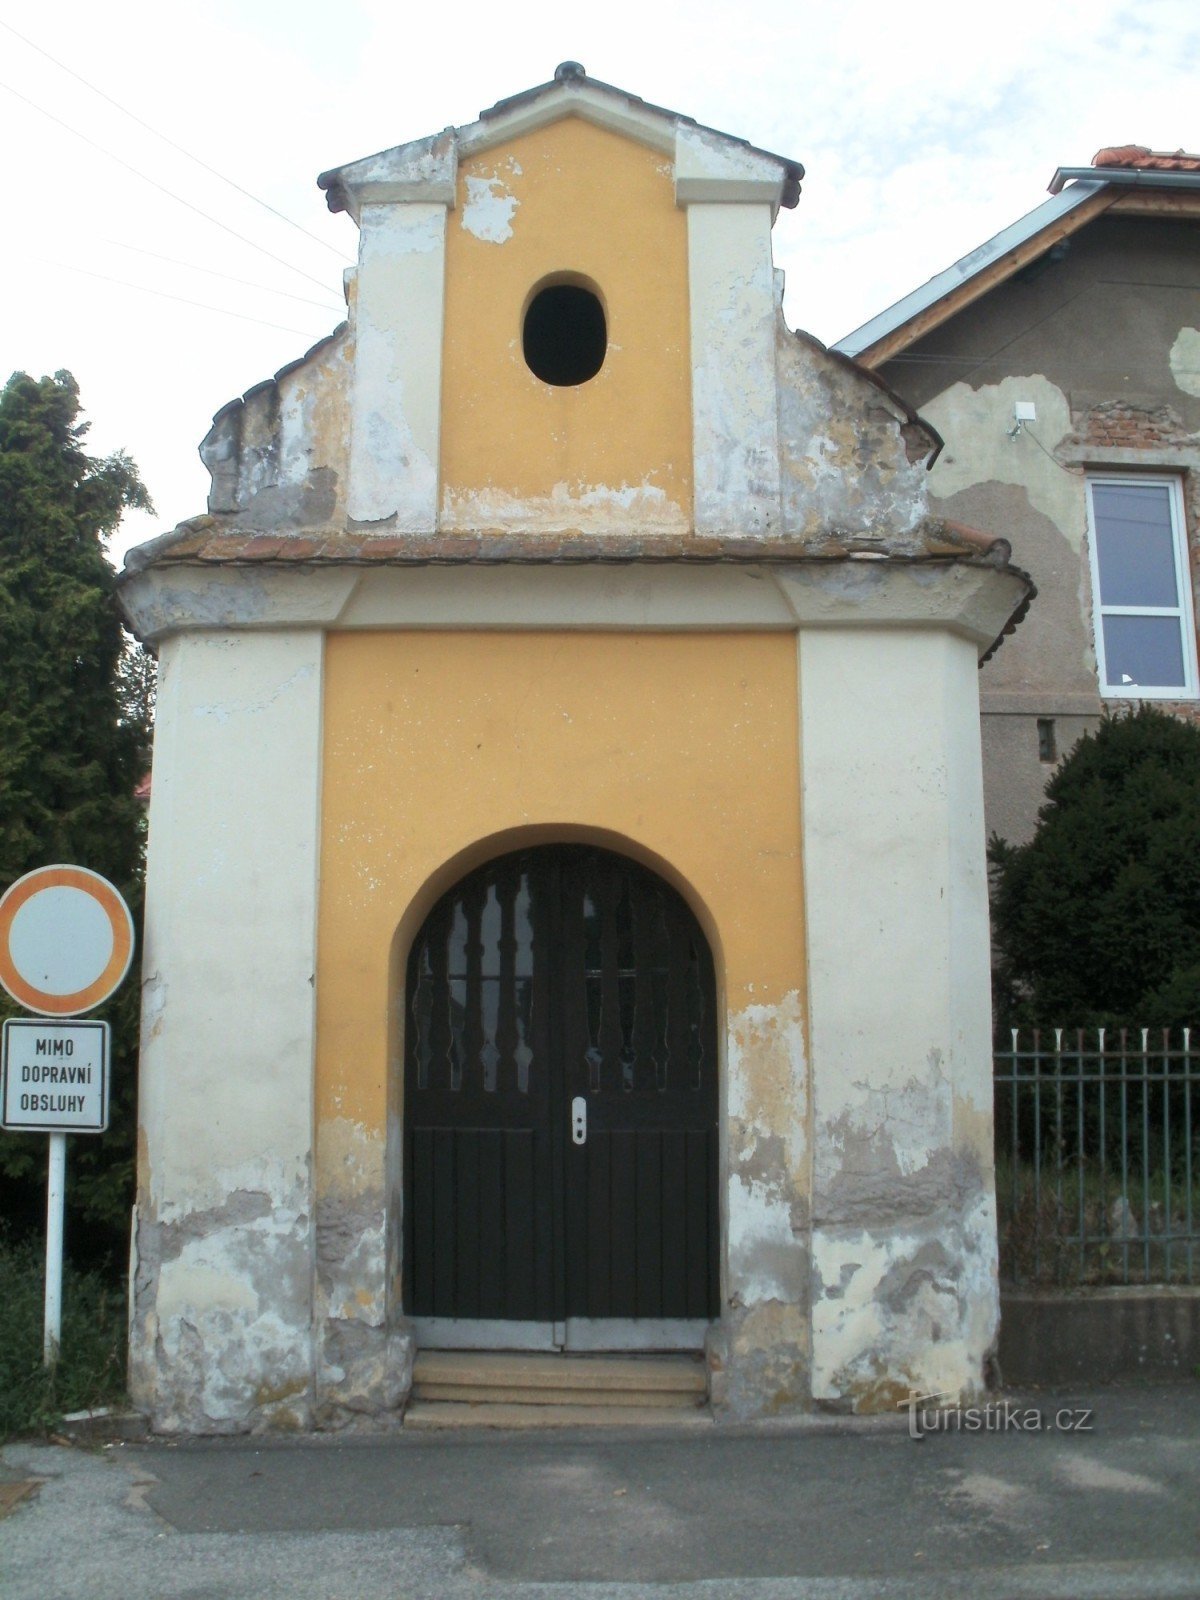 Hradec Králové - Plotiště nad Labem - 圣彼得教堂伊西多尔